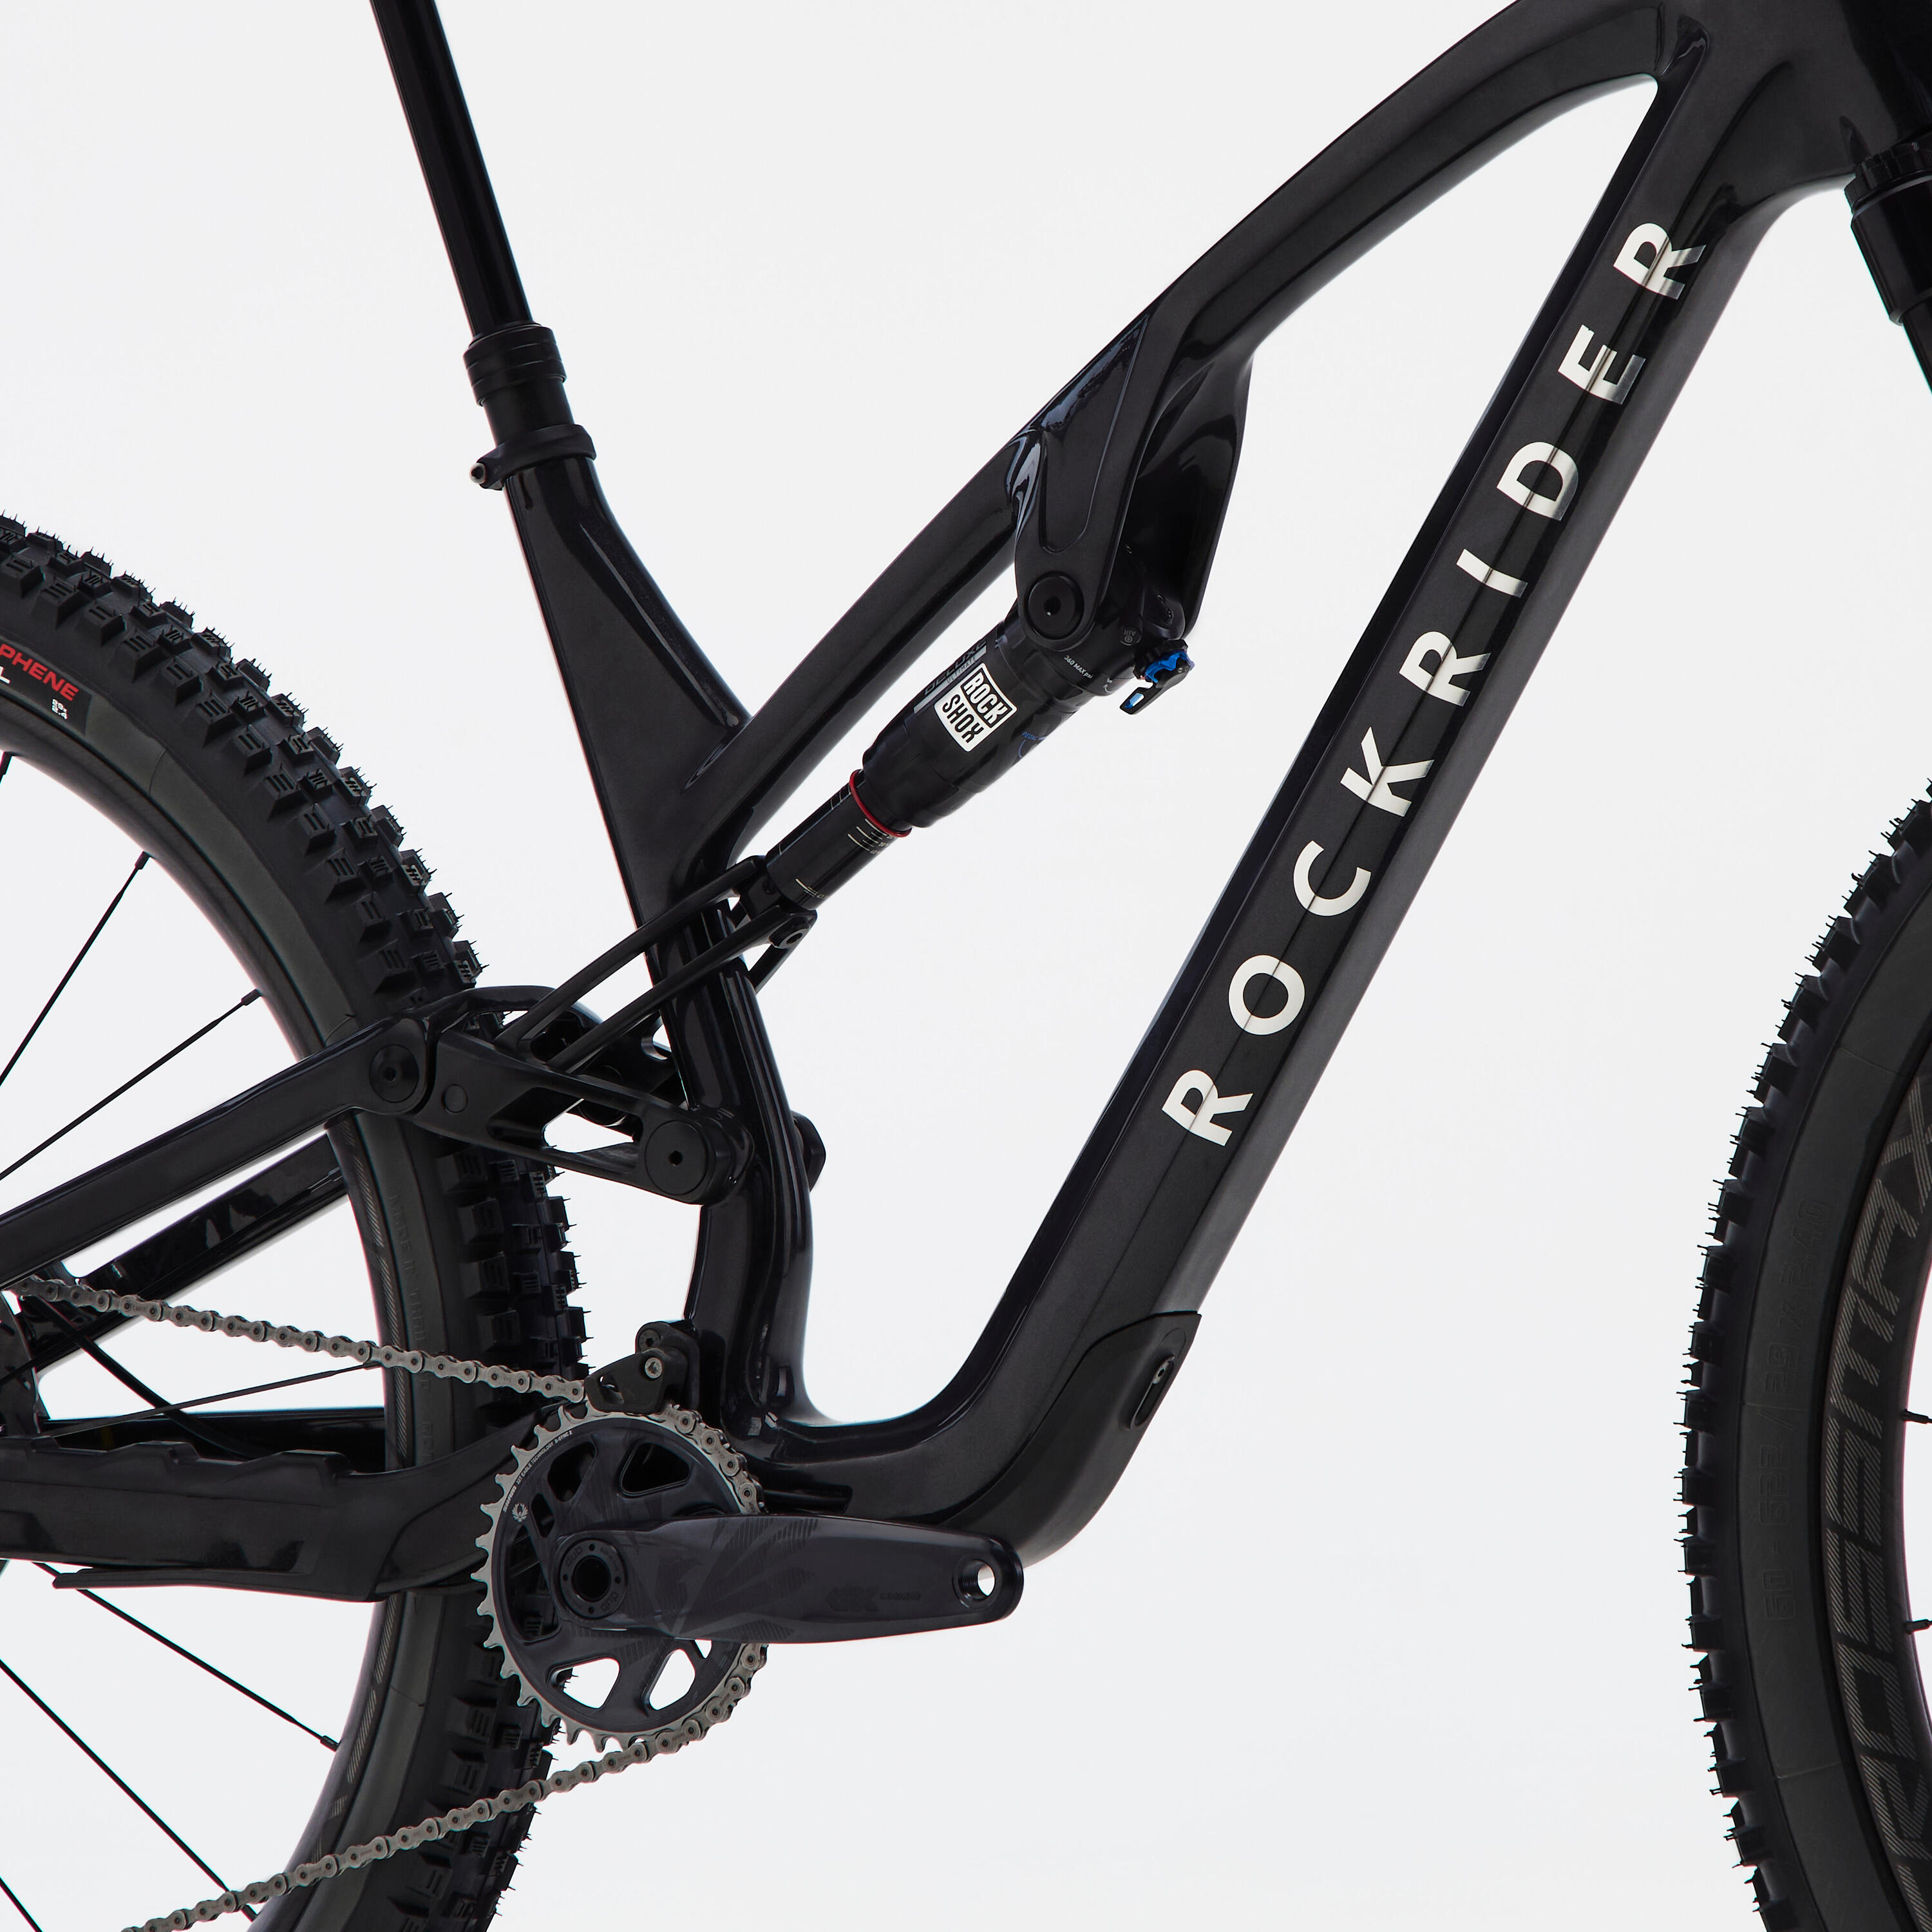 Carbon frame, adjustable suspension mountain bike, black 9/11